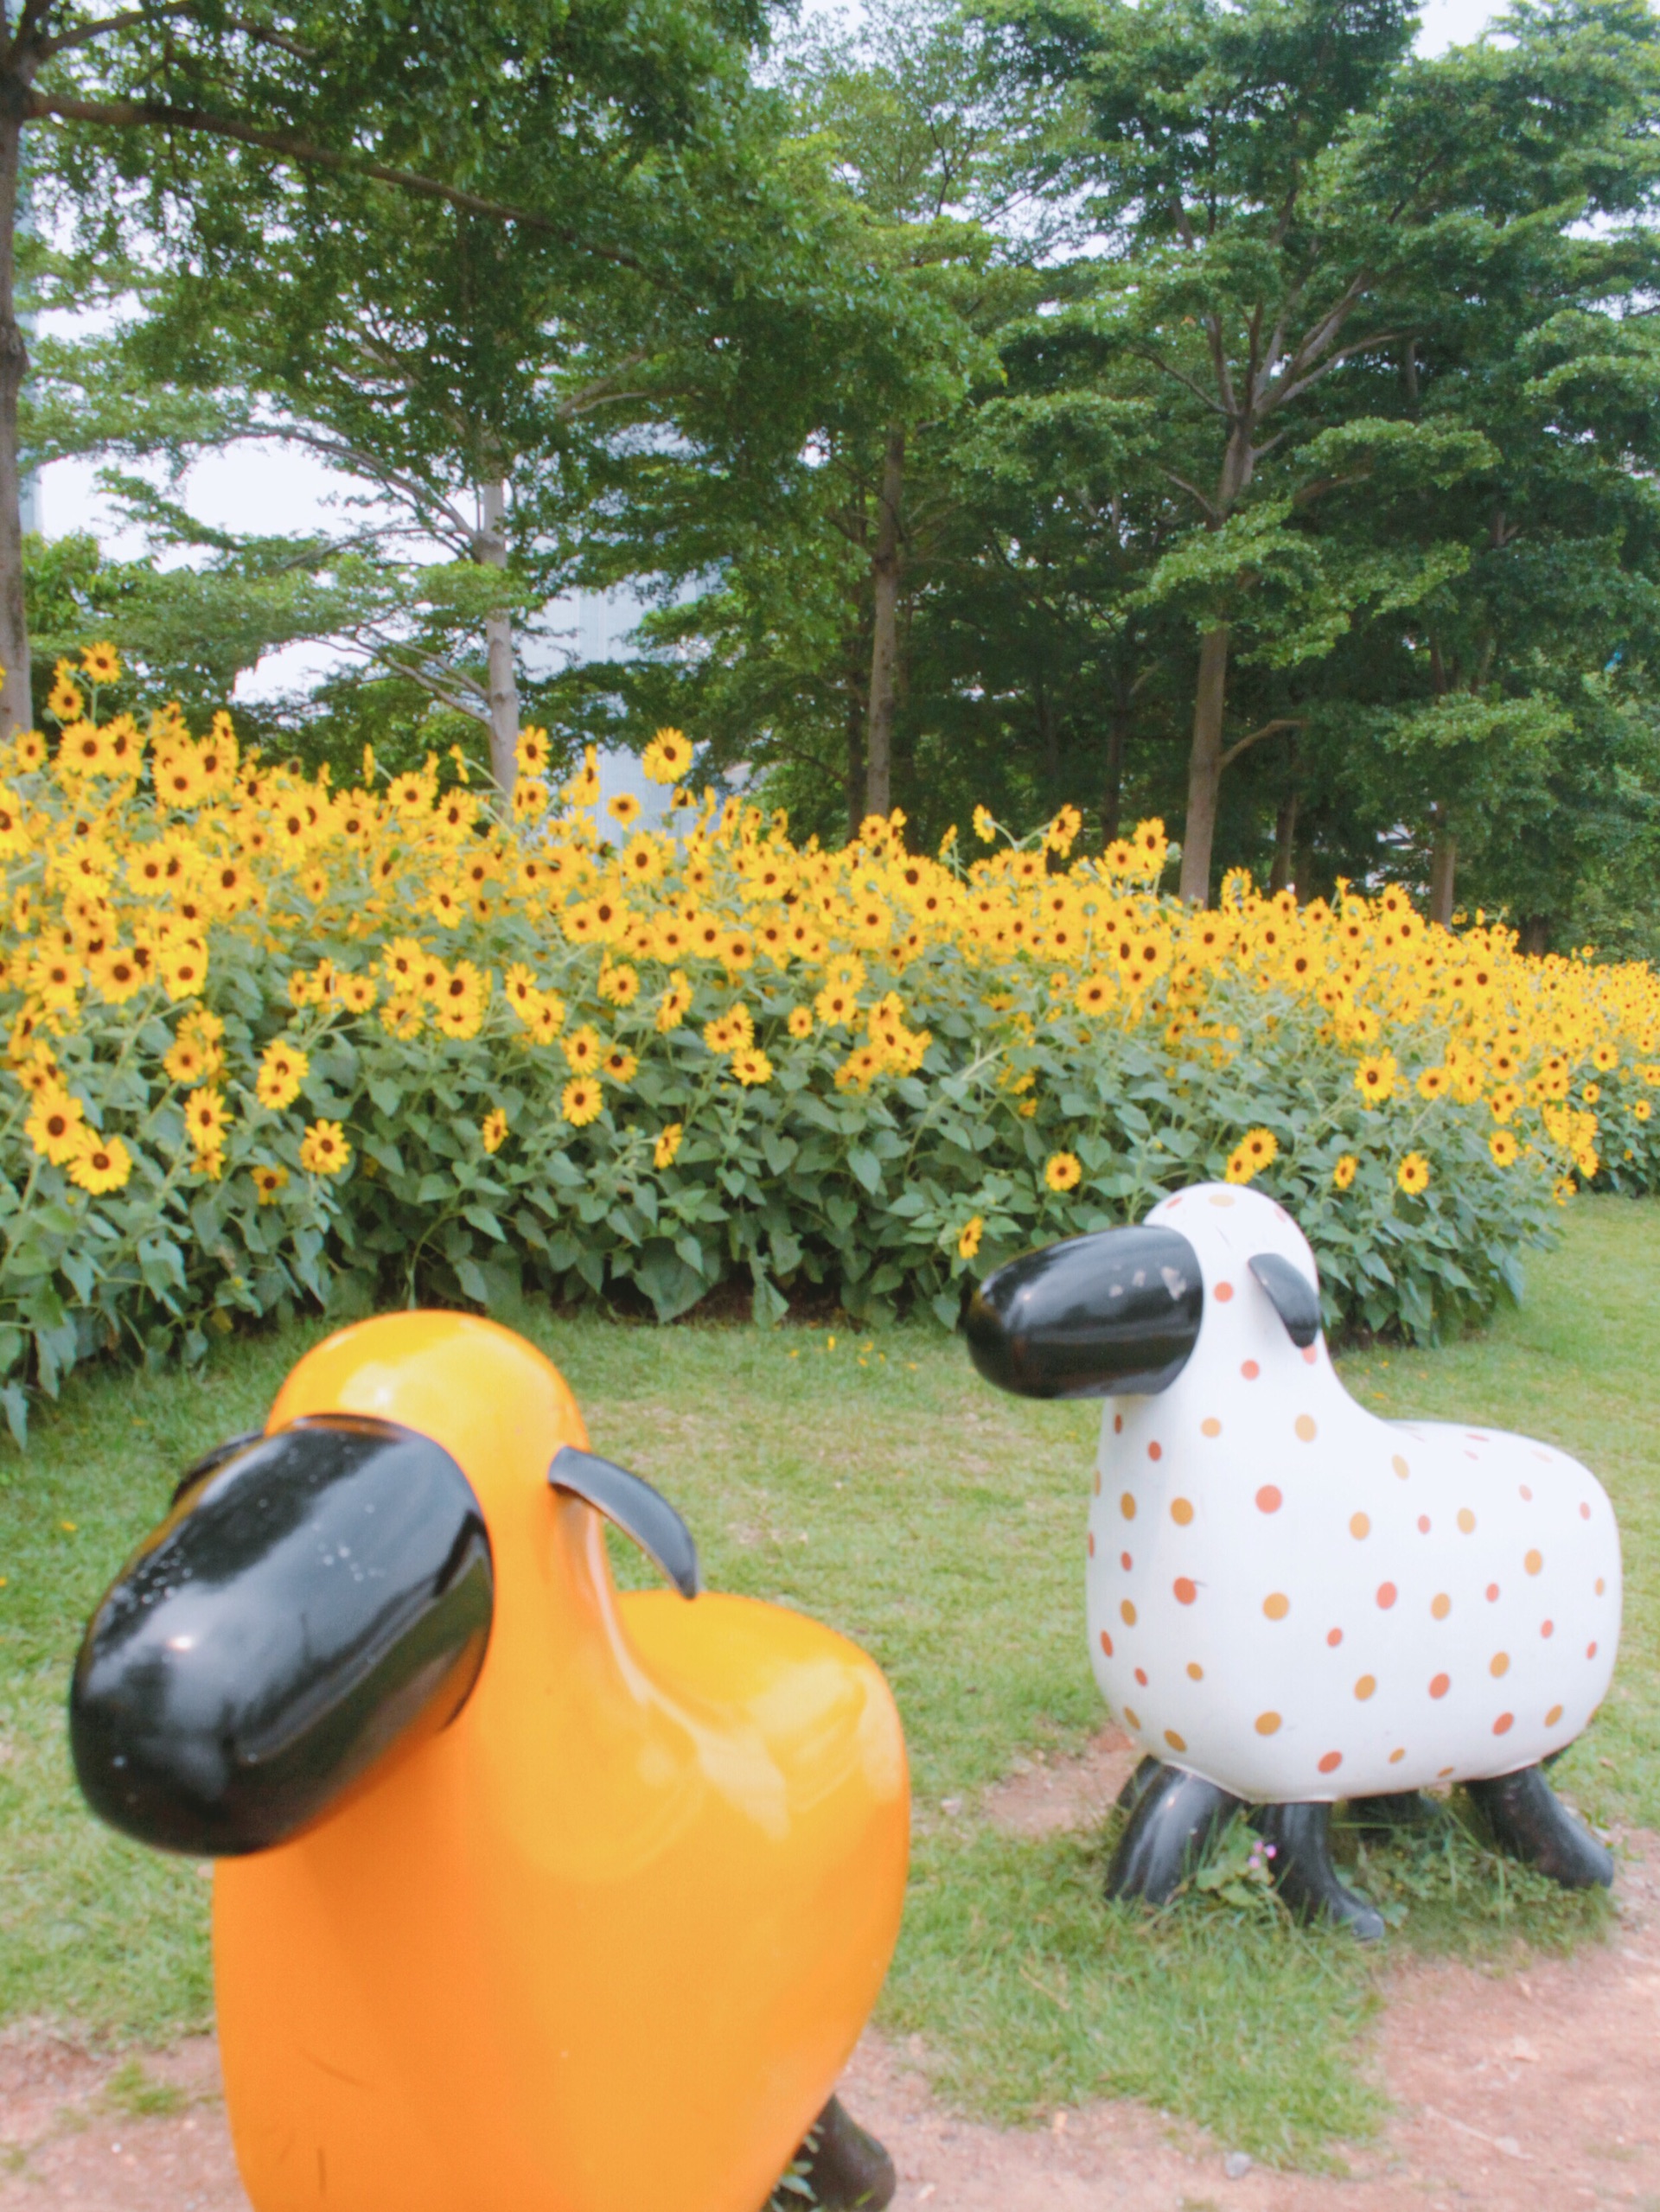 广州 | 记录花城初夏的样子——向日葵花海-二沙岛艺术公园